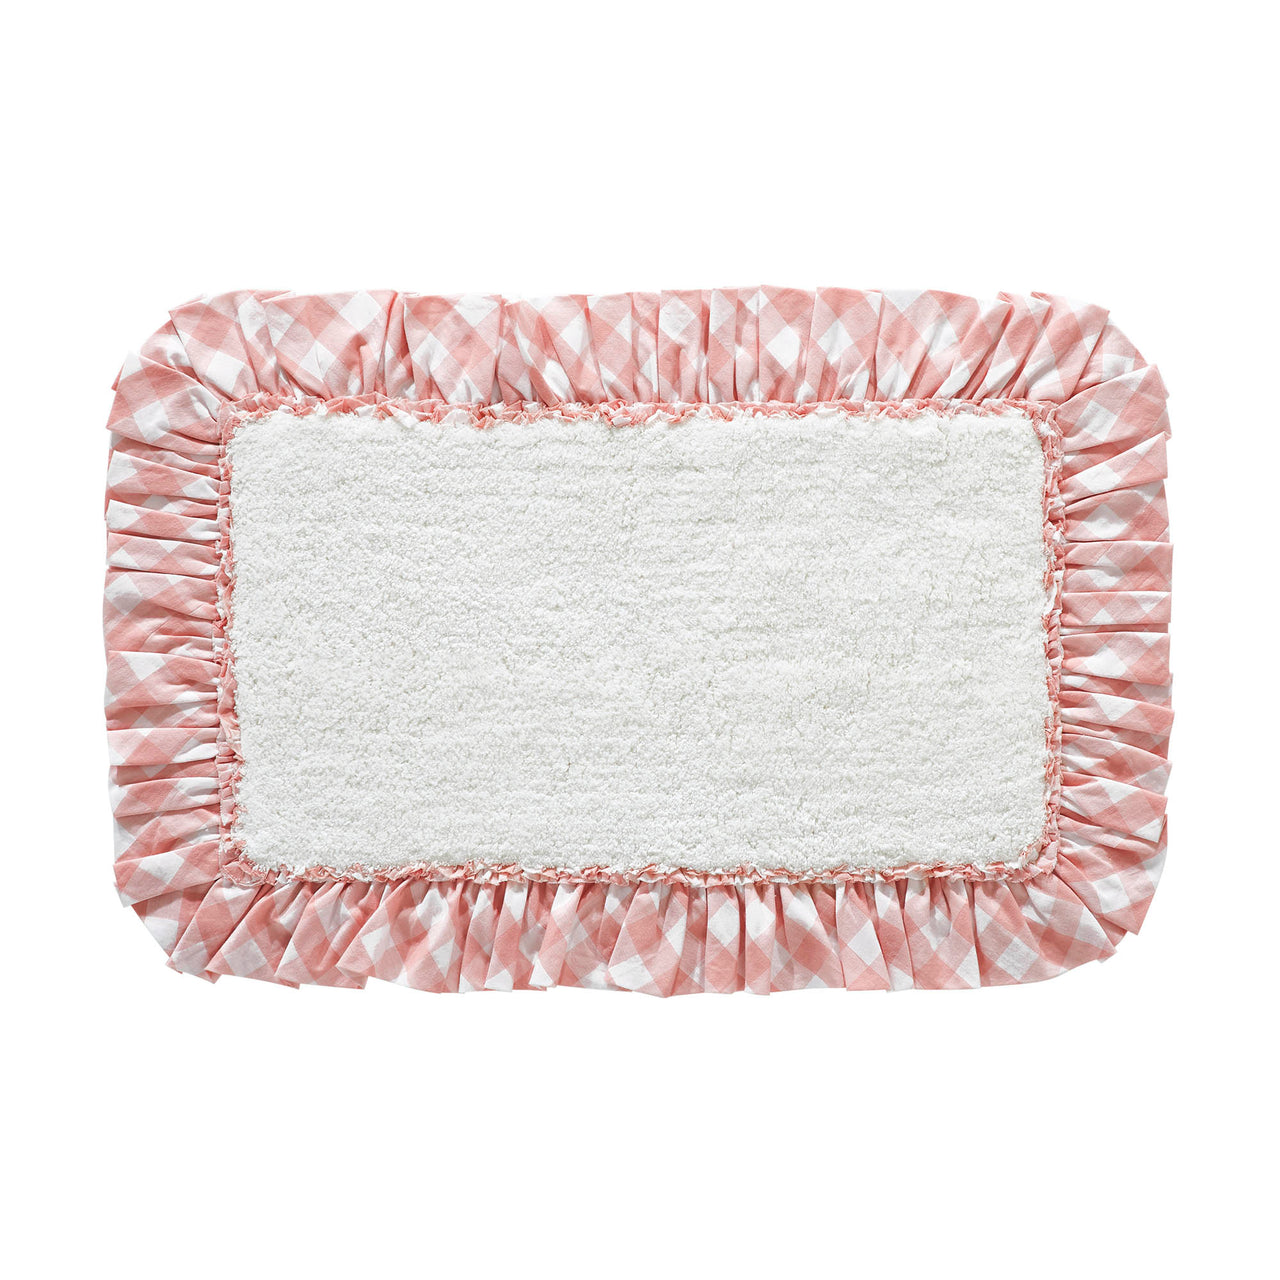 Annie Buffalo Coral Check Bathmat 20" x 30" VHC Brands